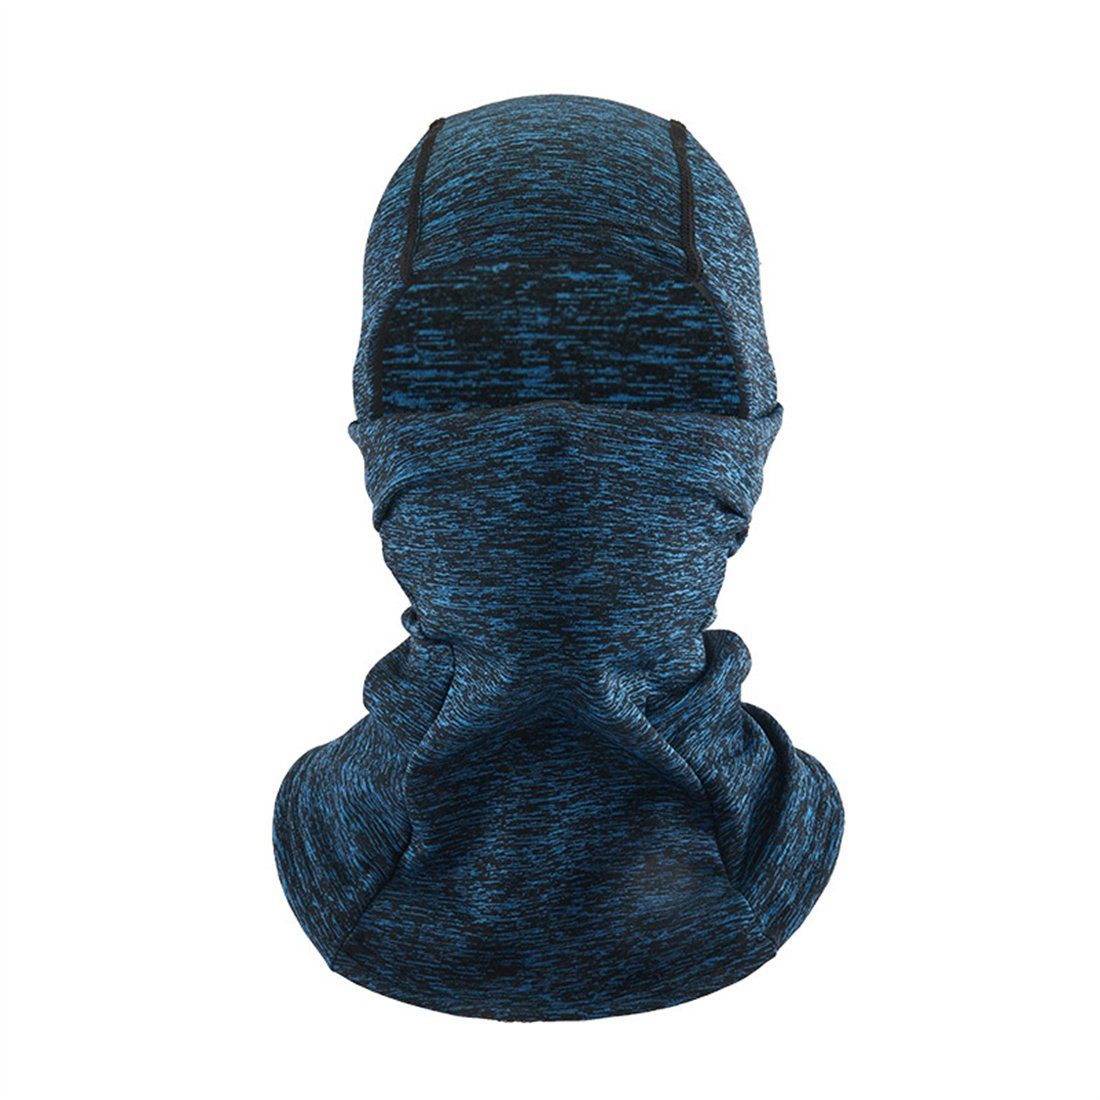 DÖRÖY Sturmhaube Winter Radfahren Maske, warme blau Kopfbedeckung, Ski kalte unisex